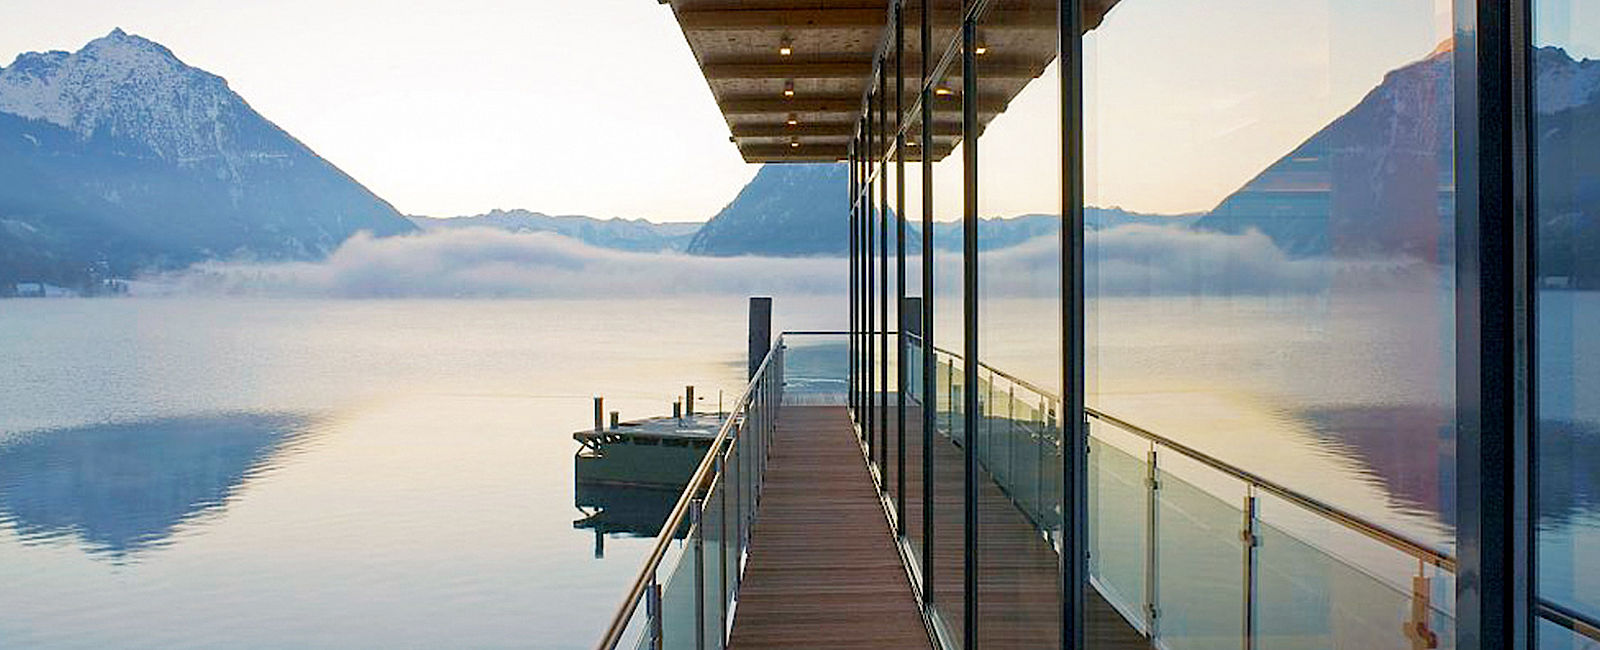 HOTELTEST
 Travelcharme Fürstenhaus am See 
 Natur pur am Tiroler Fjord 